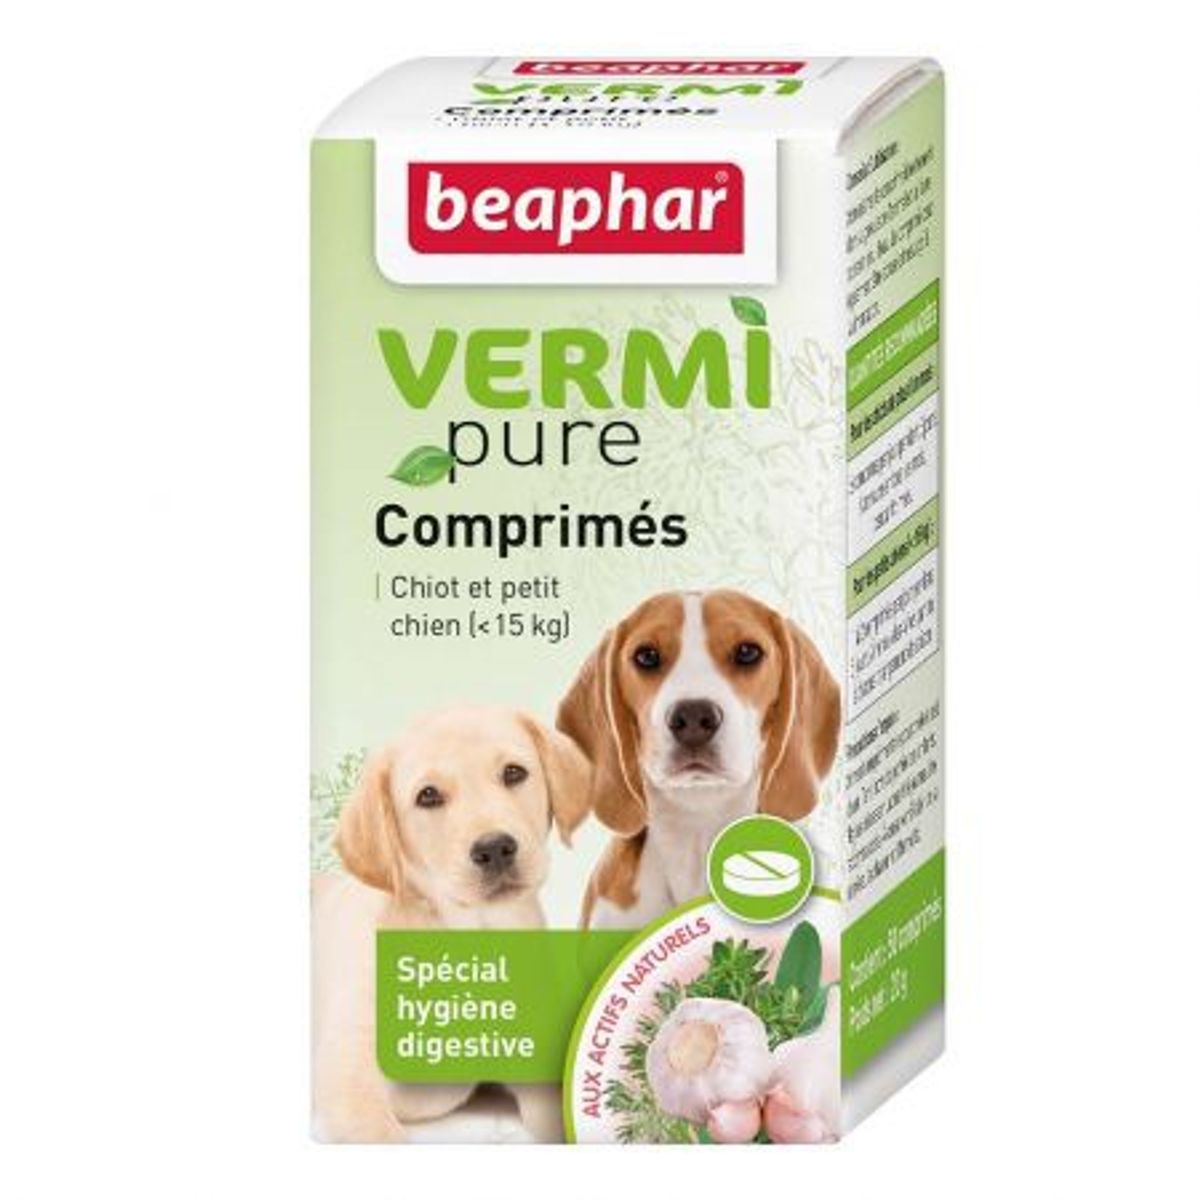 VermiPure comprimés pour chiot et petit chien - Beaphar